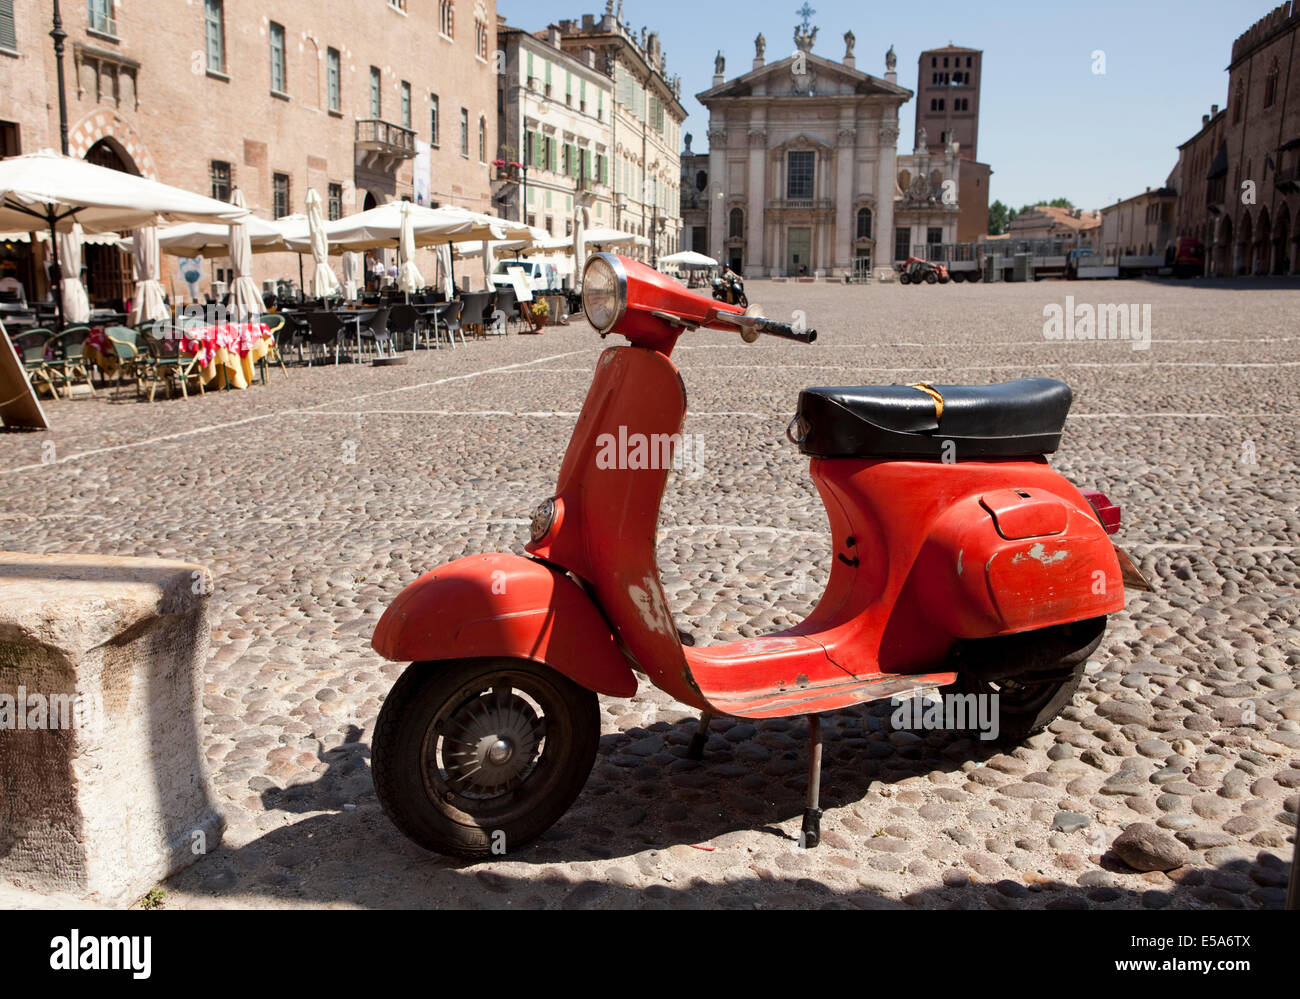 Eine alte rote Roller auf einem gepflasterten Platz in Mantova, Italien  geparkt Stockfotografie - Alamy